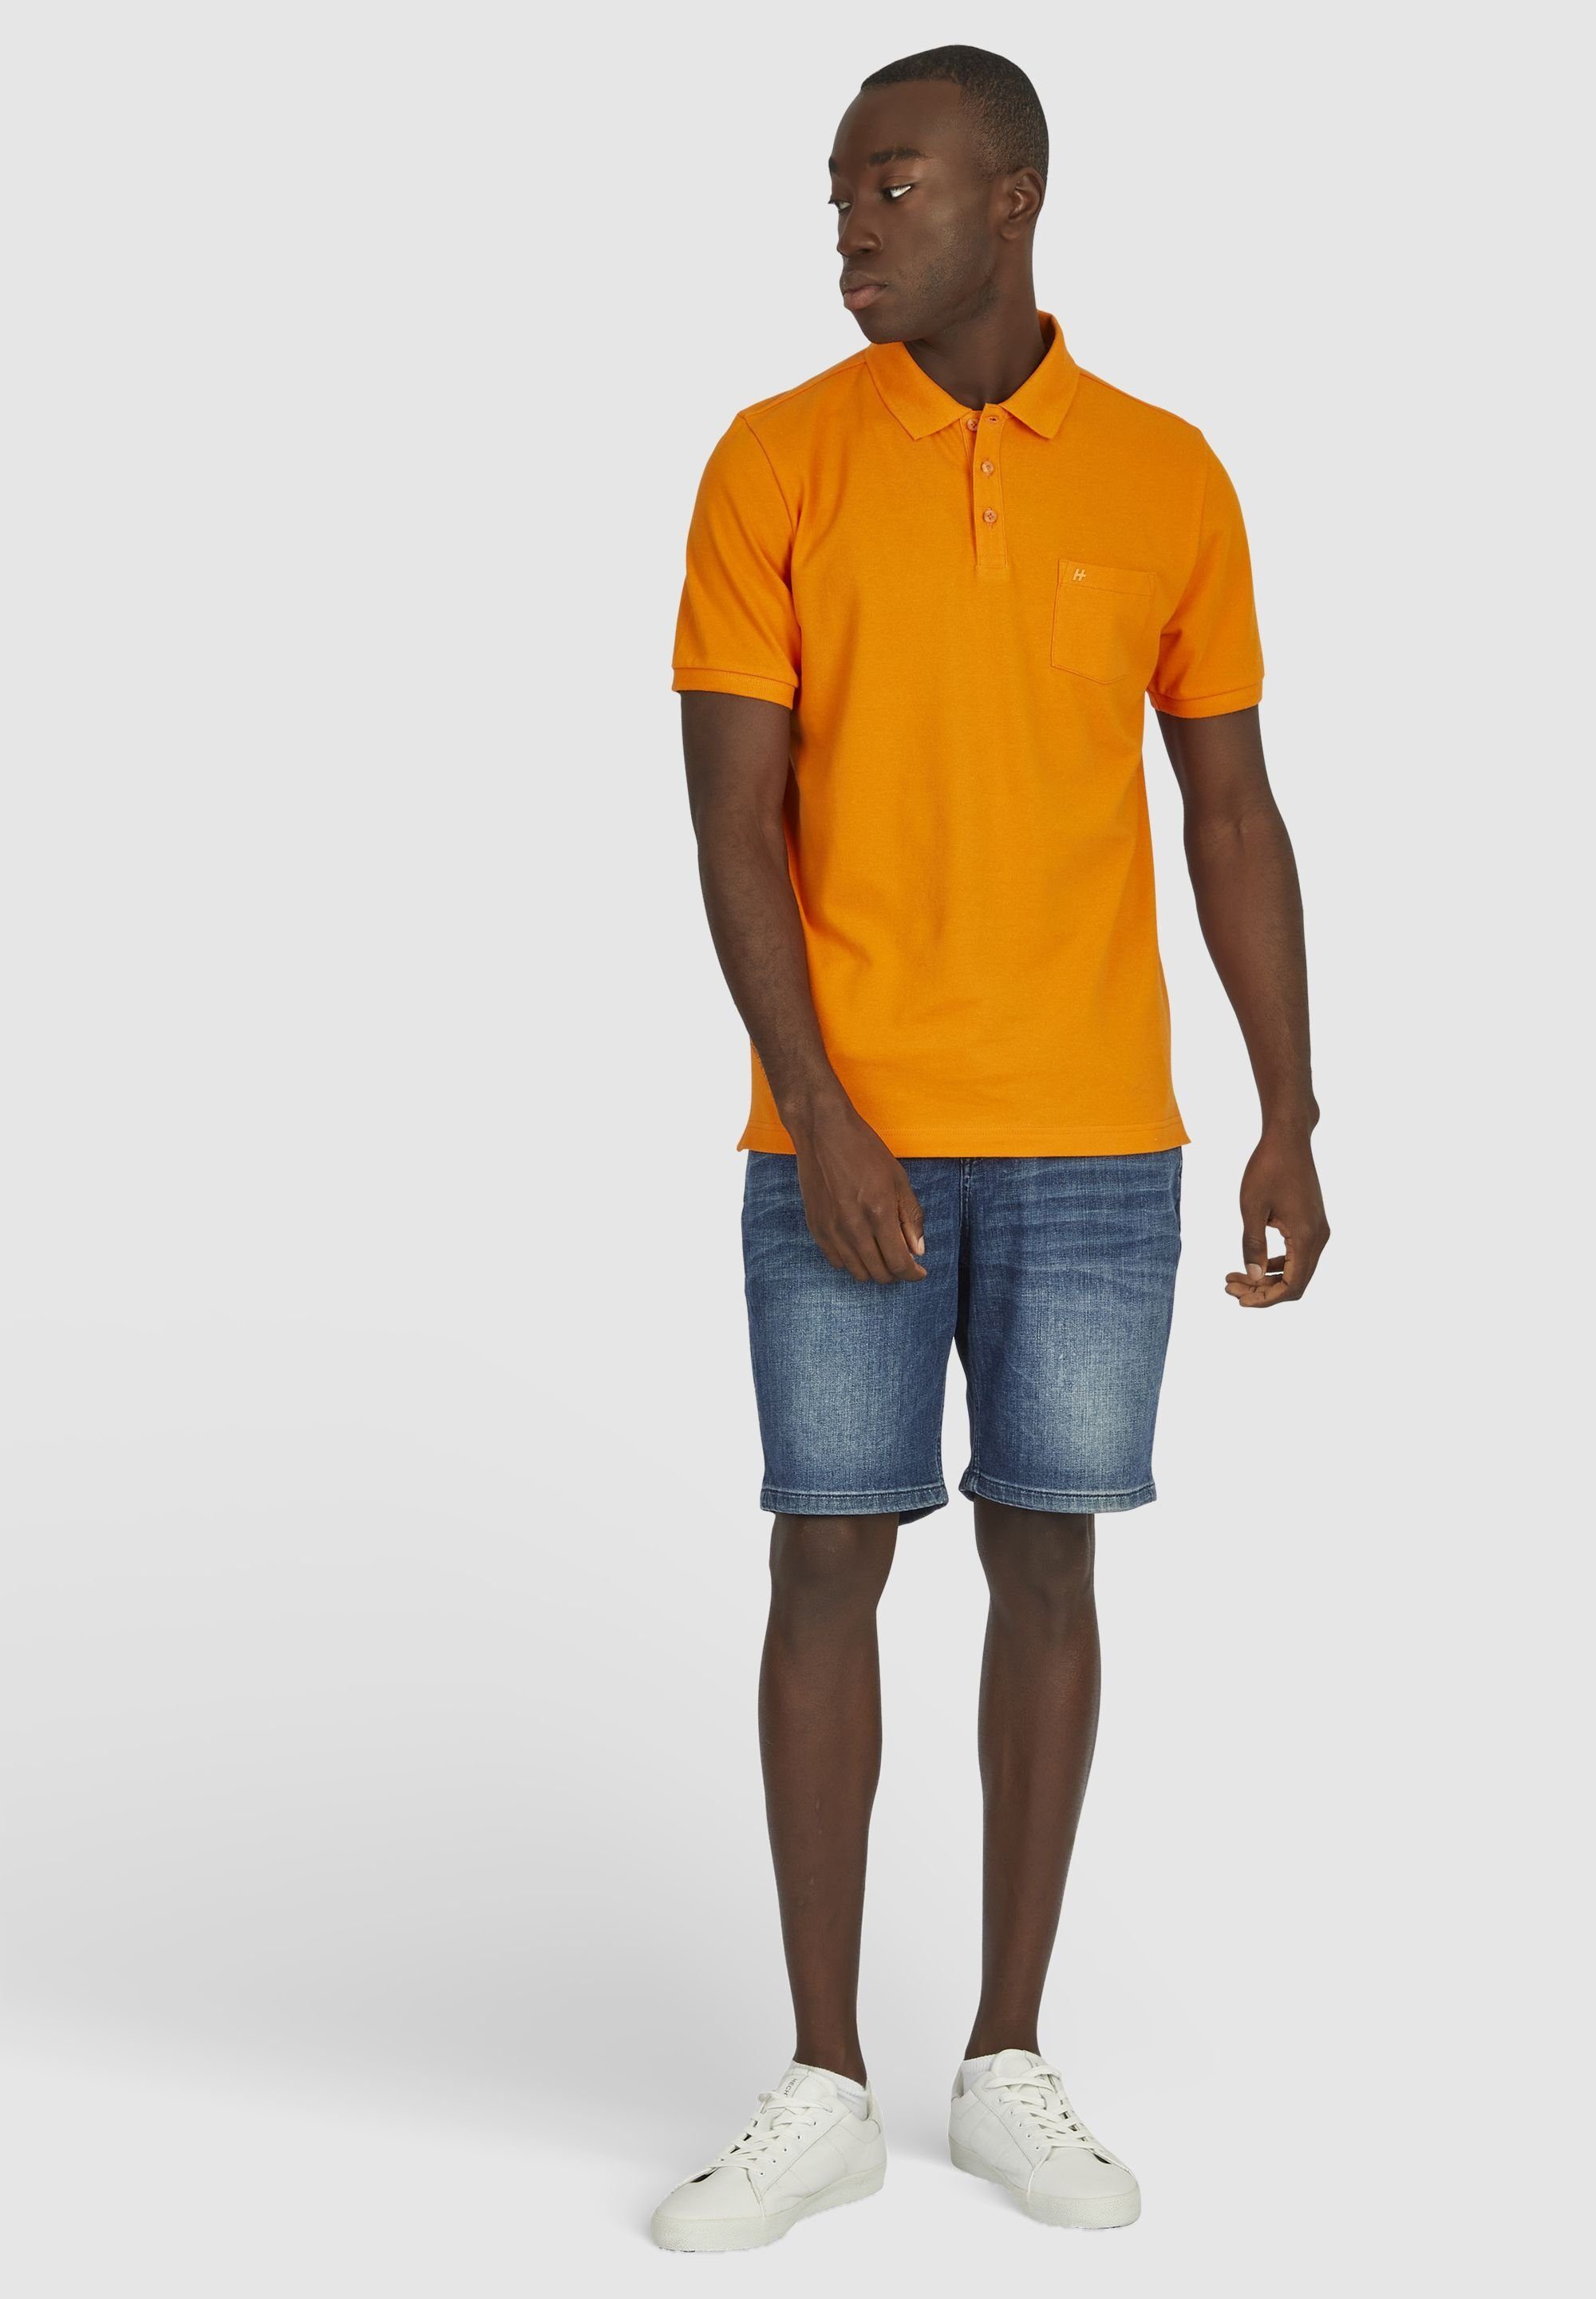 HECHTER PARIS orange polokrage Poloshirt mit